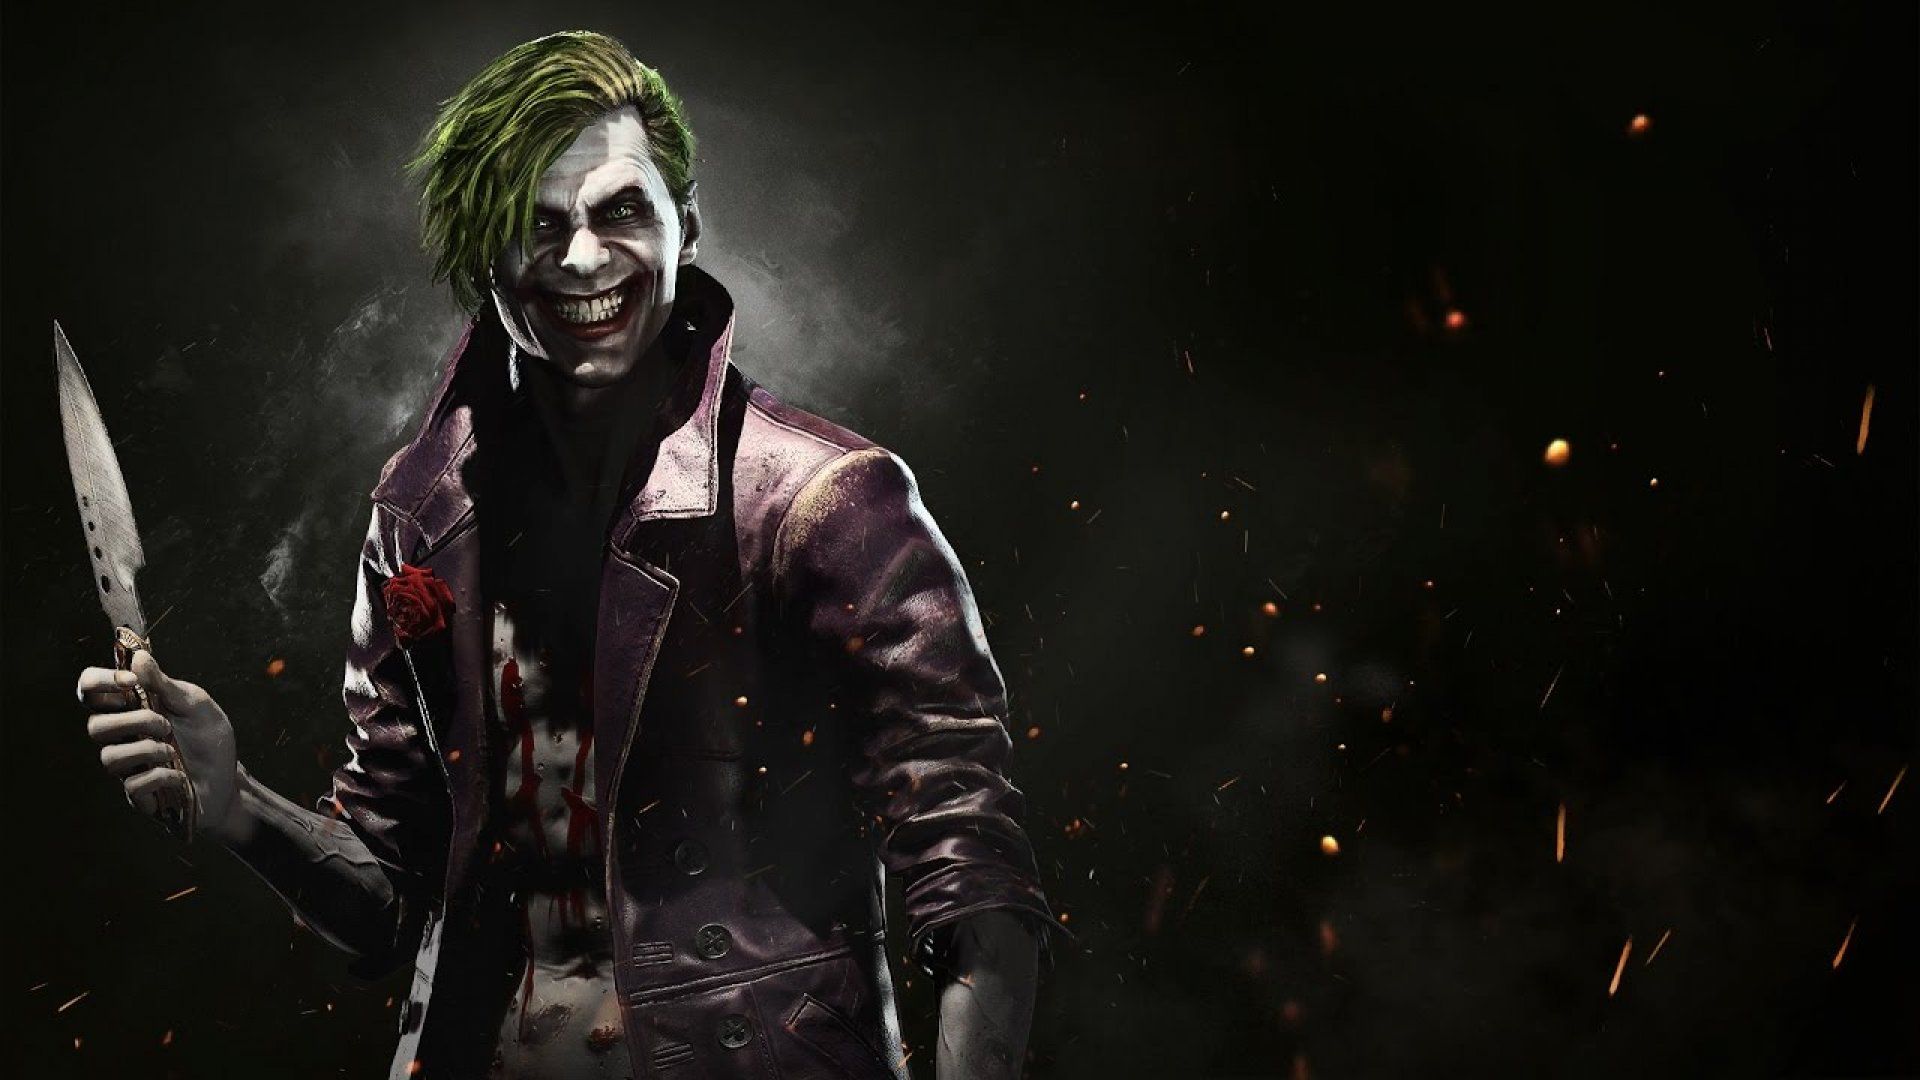 Joker Injustice HD Games, 4k Wallpaper, Image, Background